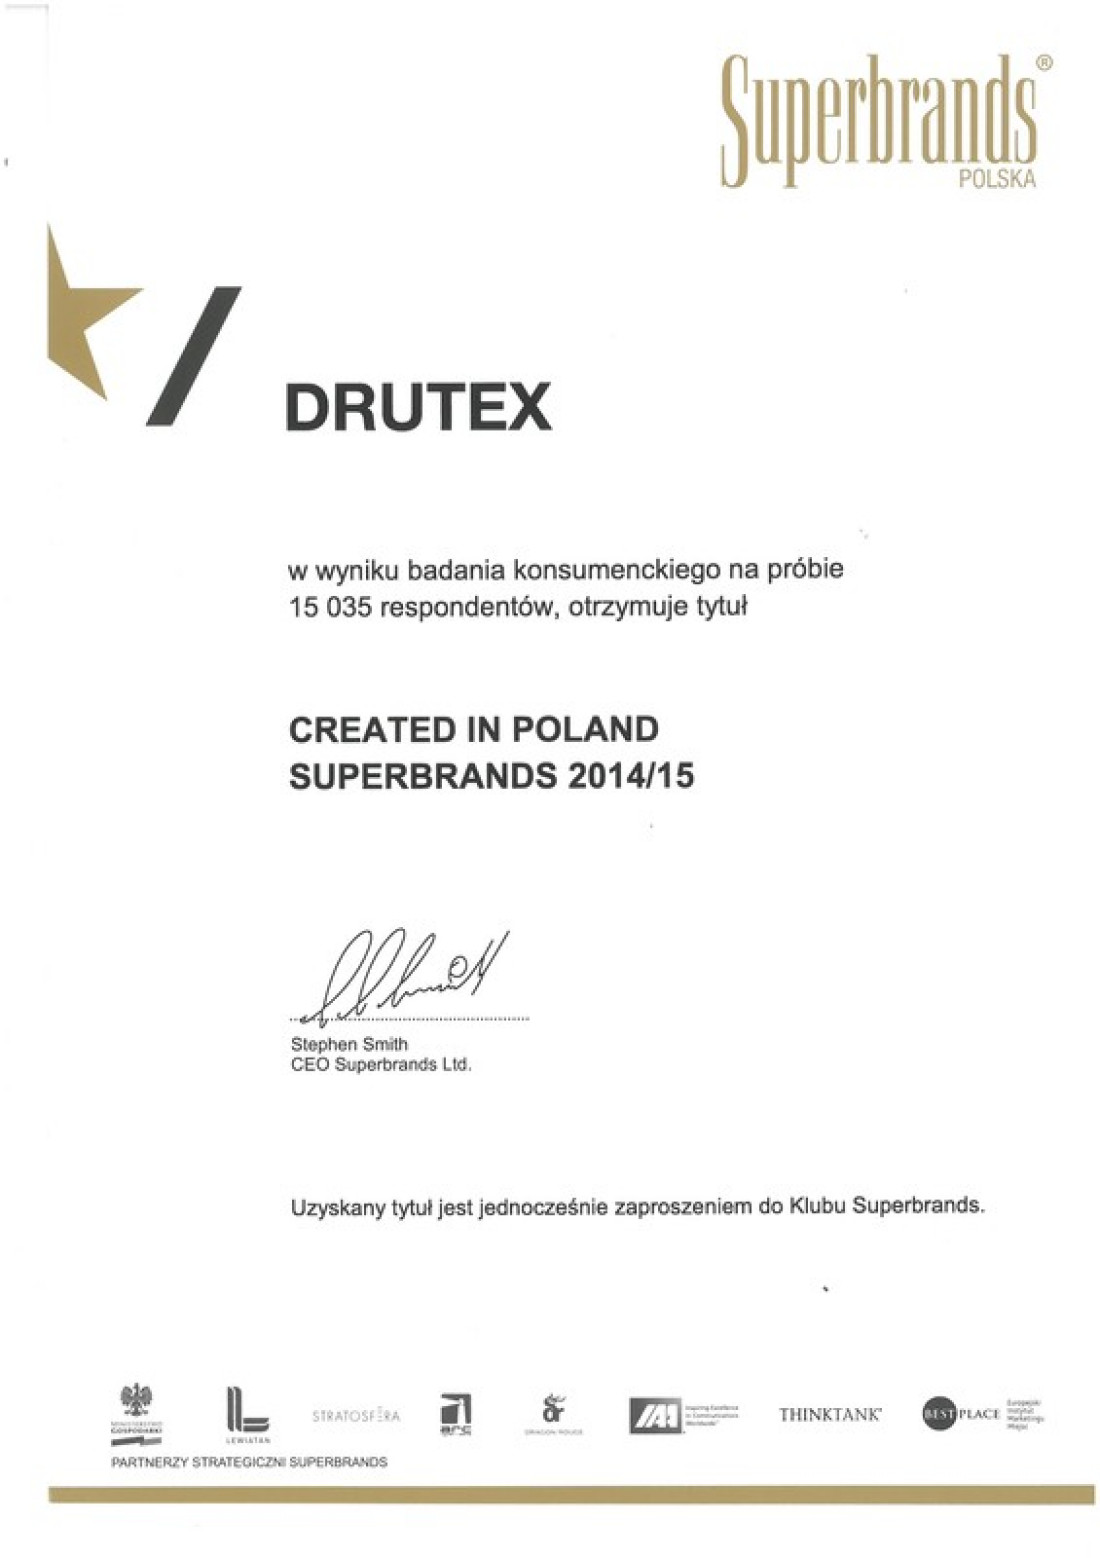 Drutex wyróżniony w rankingu Superbrands 2014